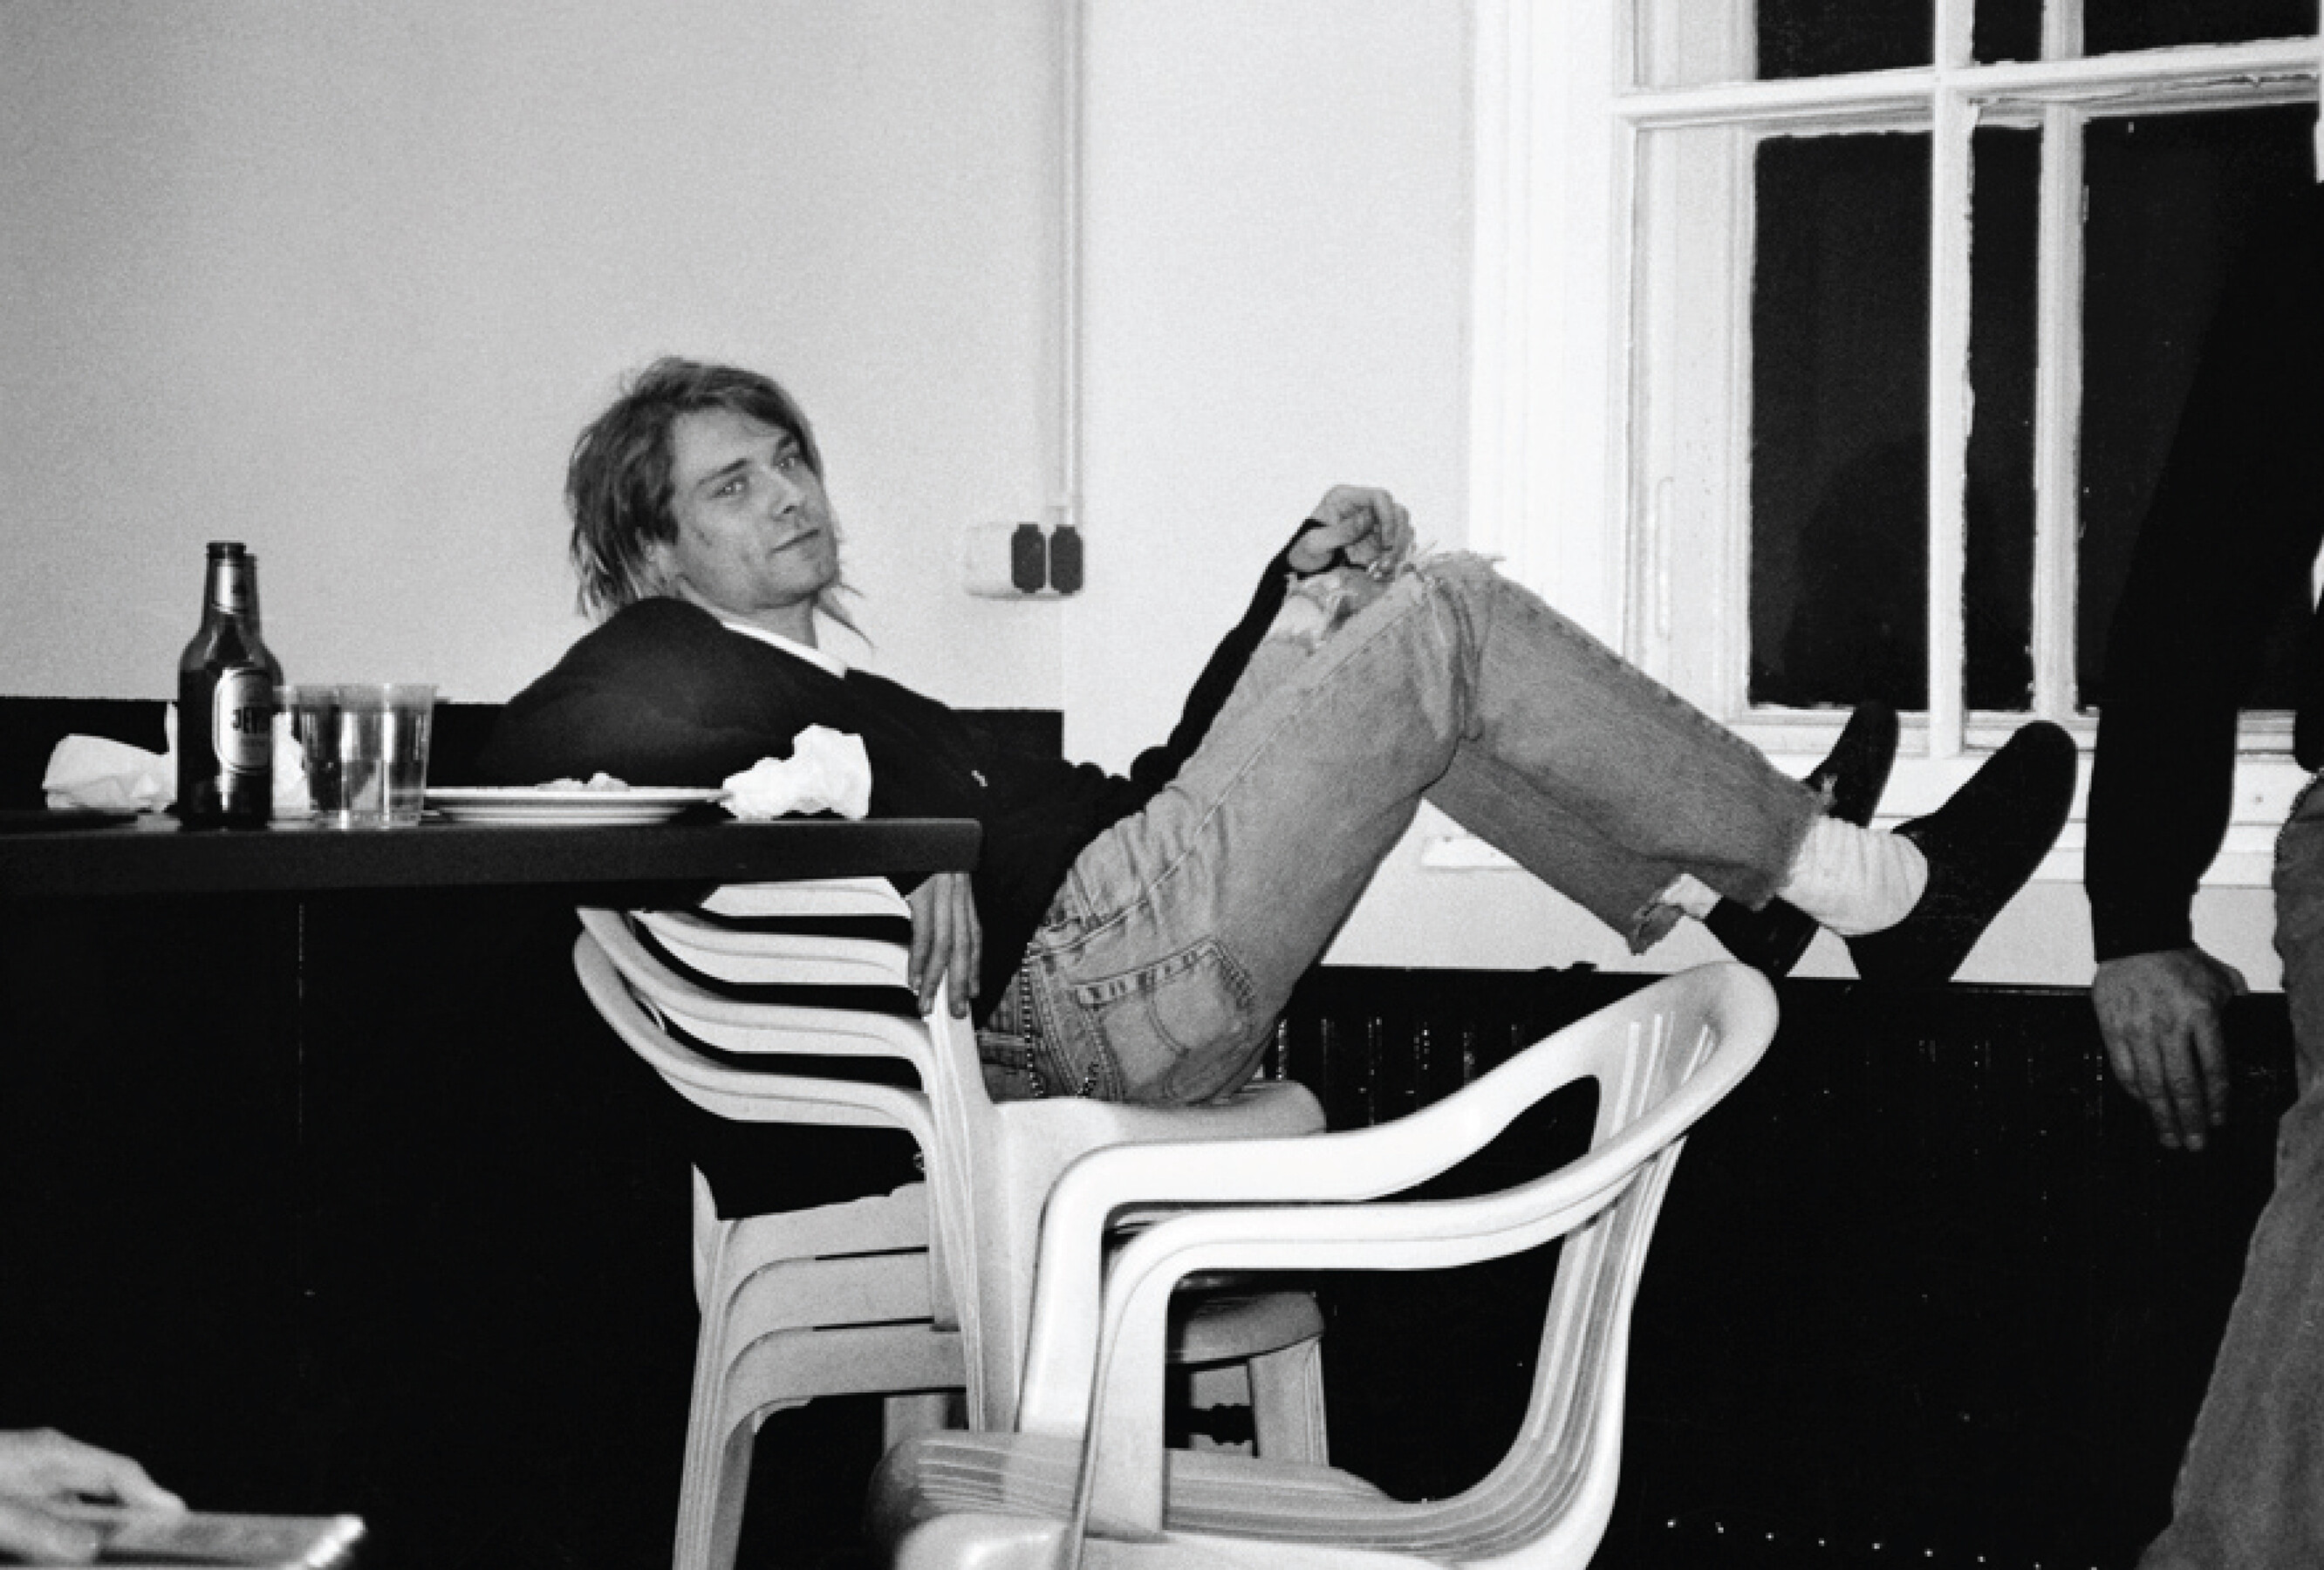 Курт Кобейн, 1991 год. Фотограф Юрген Теллер